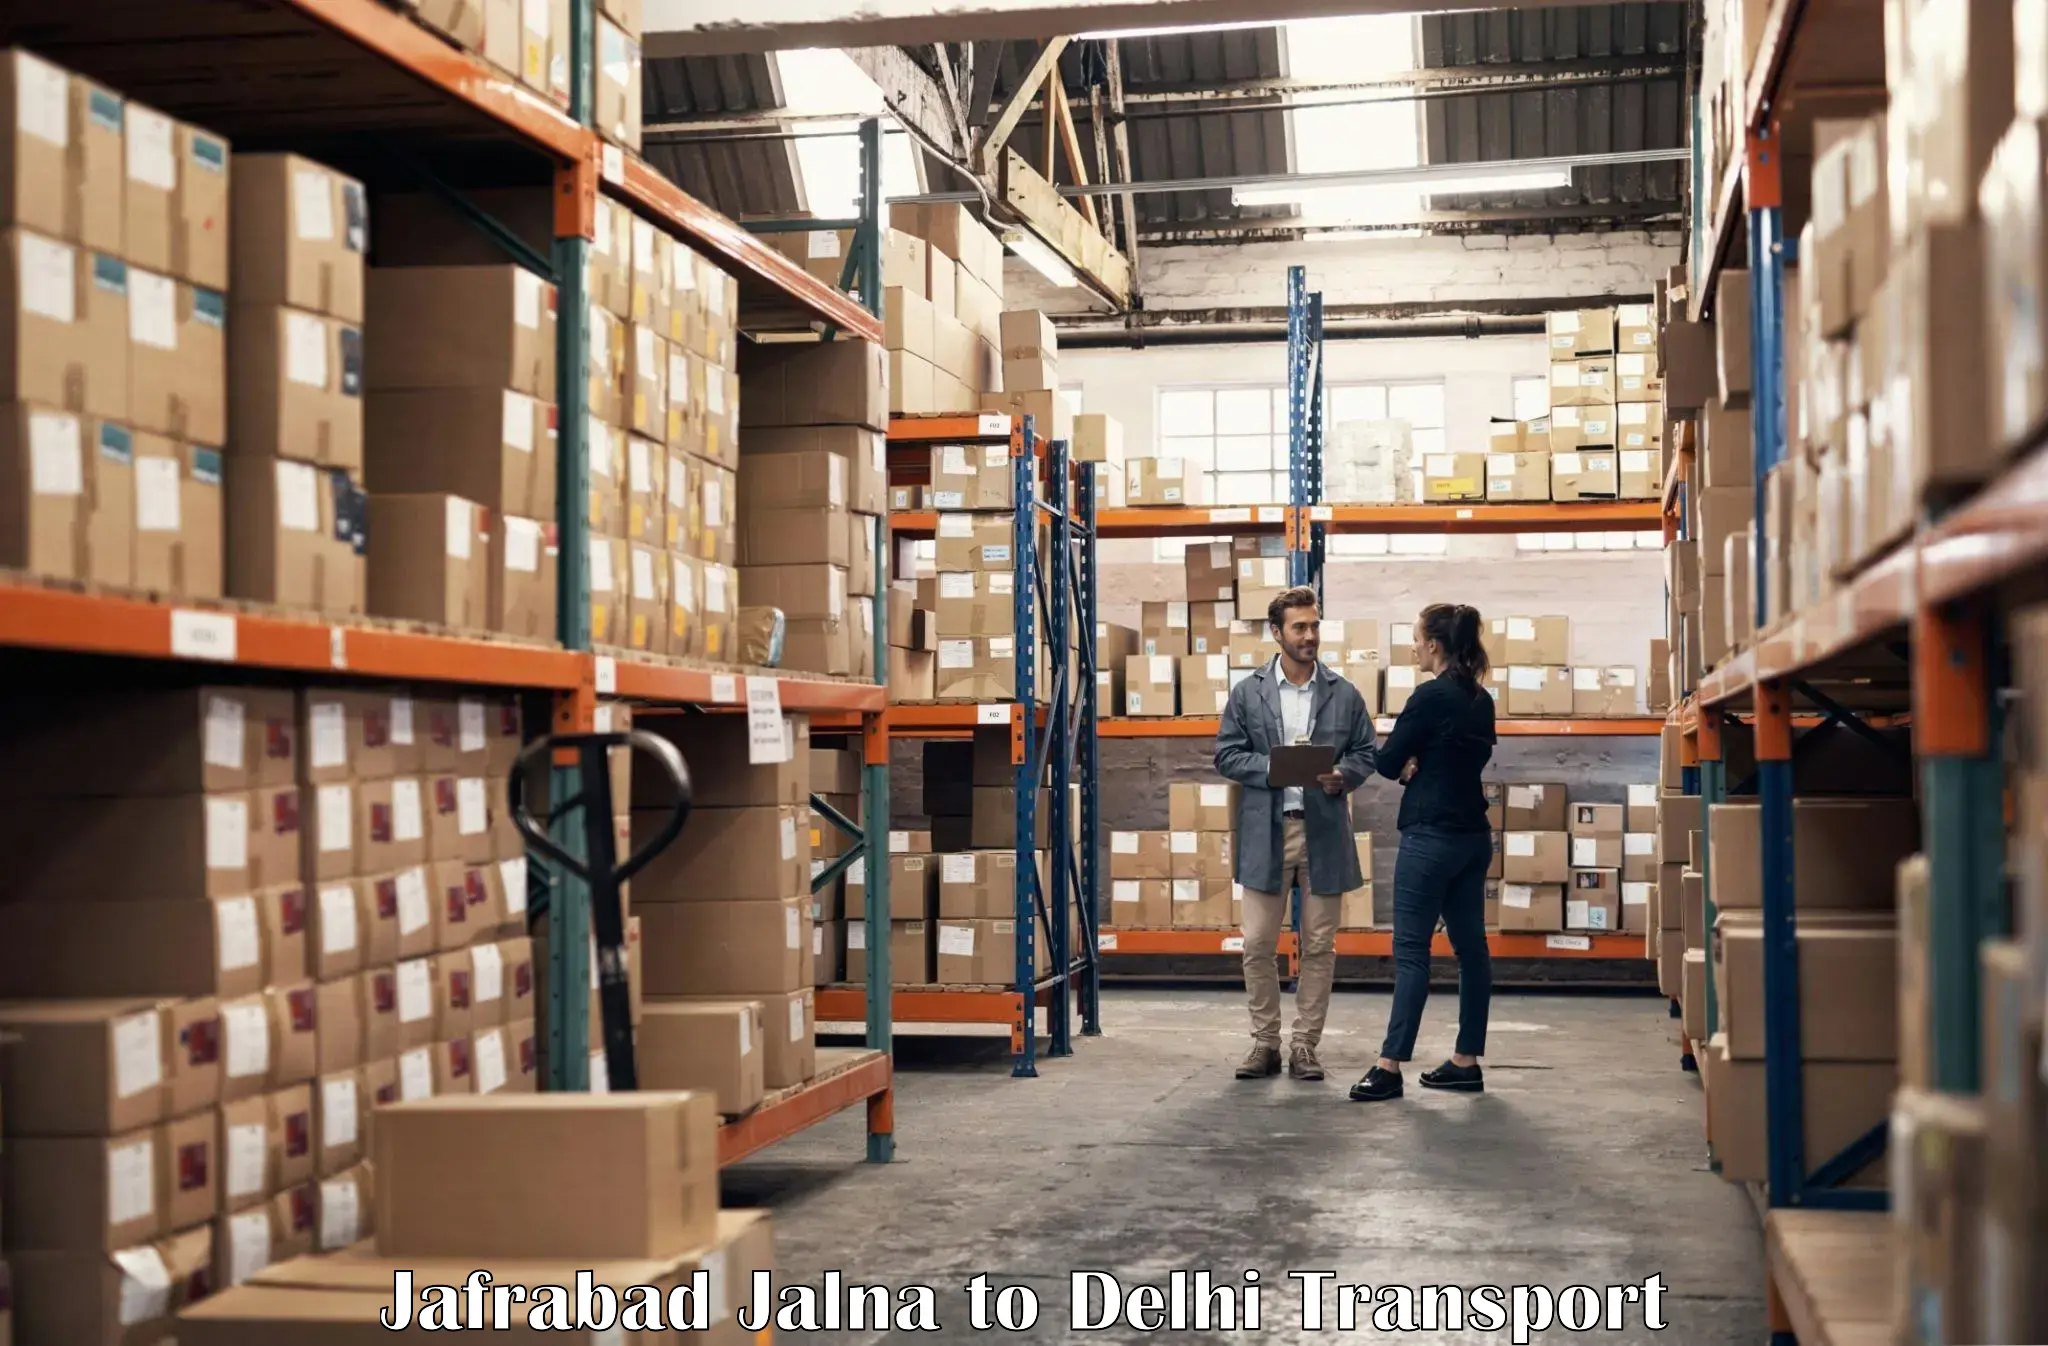 Pick up transport service Jafrabad Jalna to East Delhi